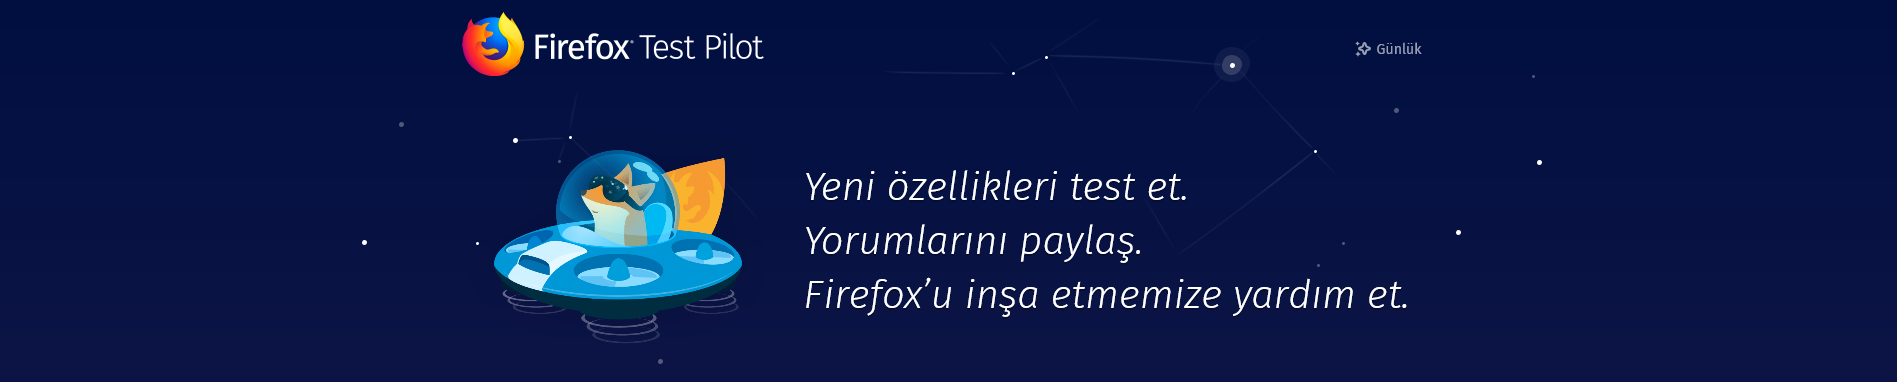 Mozilla, Firefox Test Pilot'a eklediği 2 yeni kullanışlı özelliği duyurdu